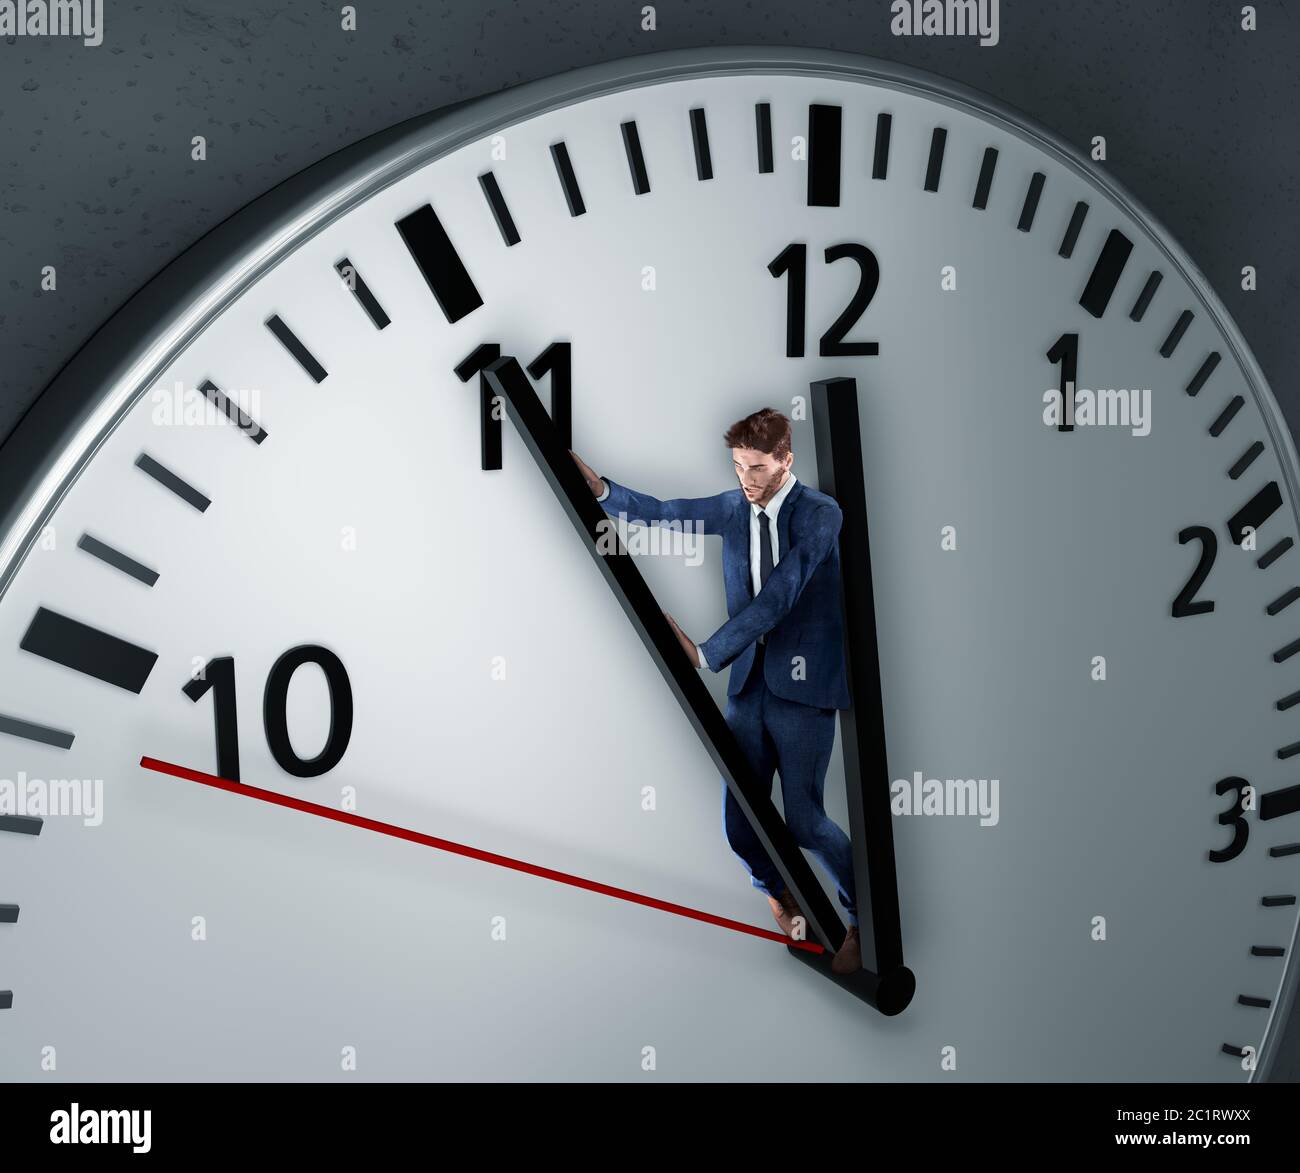 Der Mensch kämpft um mehr Zeit. Der Mitarbeiter stellt sich verzweifelt  gegen die Uhr, um mehr Zeit zu bekommen, damit er die Frist noch einhalten  kann Stockfotografie - Alamy